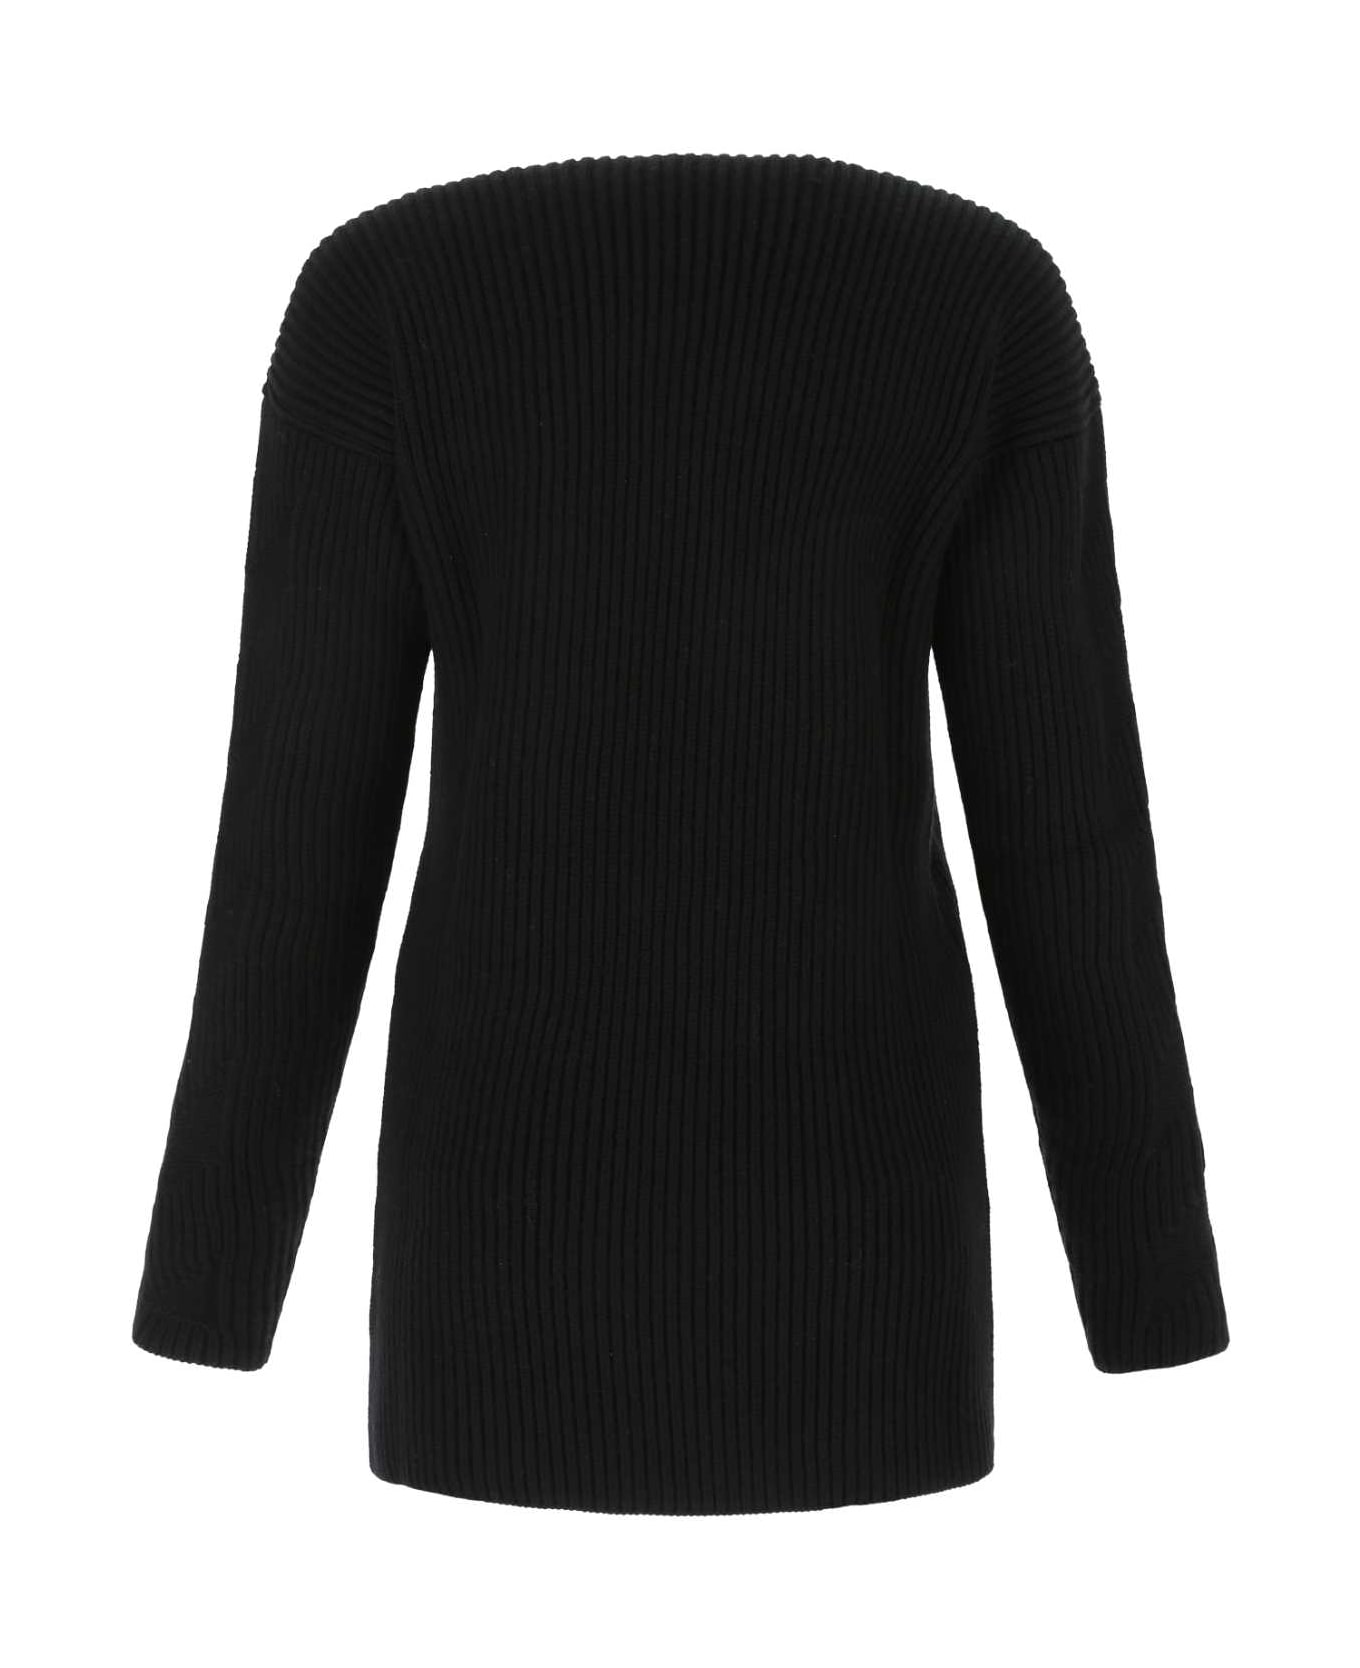 Off-White Black Wool Sweater - 1000 ニットウェア